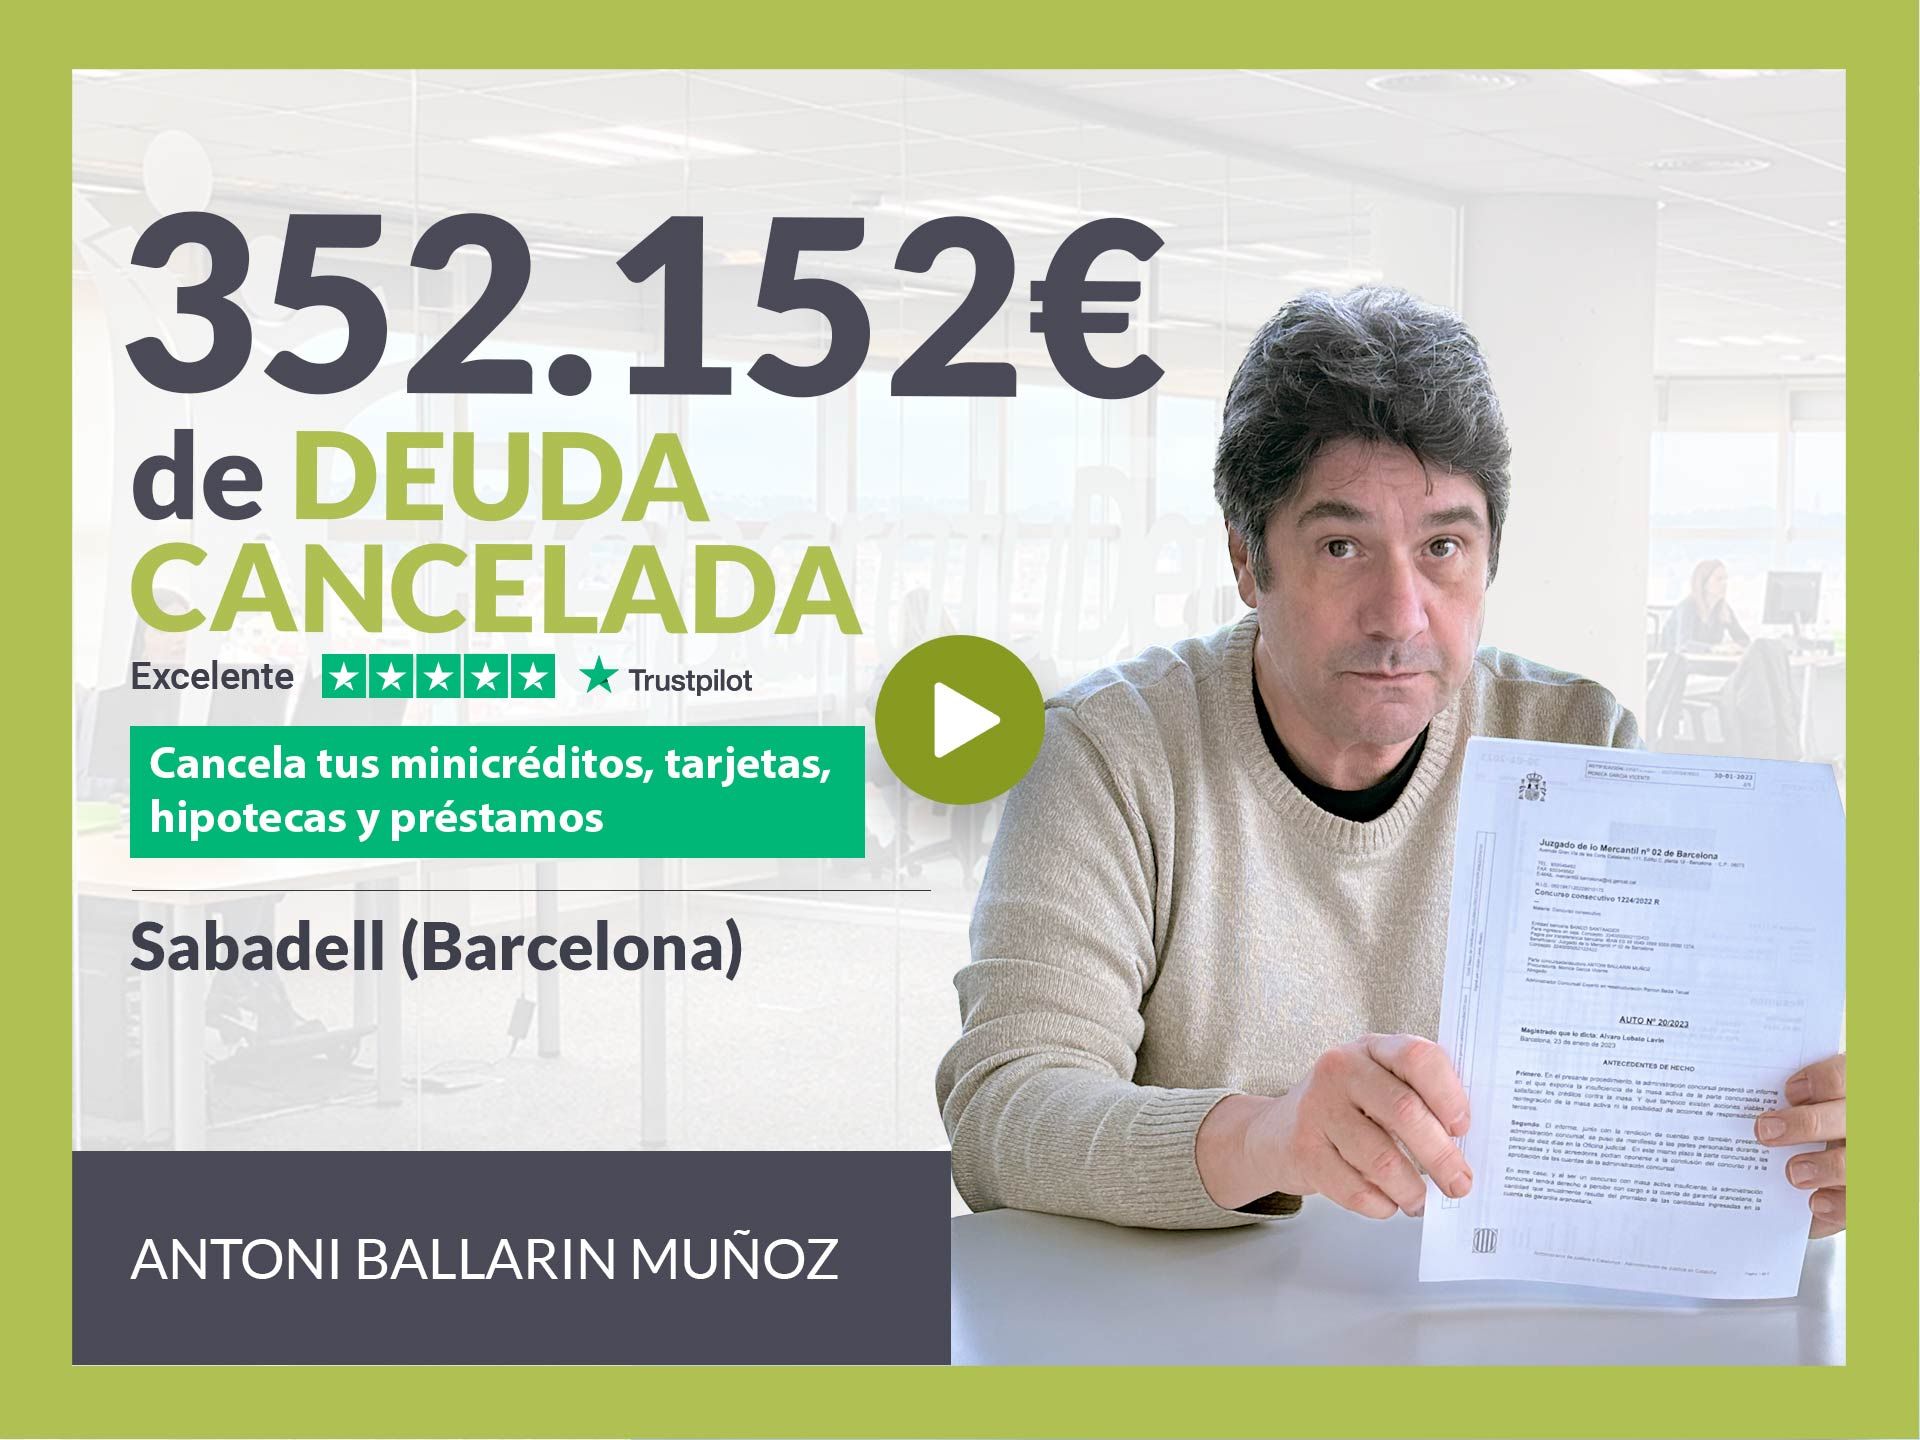 Repara tu Deuda Abogados cancela 352.152? en Sabadell (Barcelona) con la Ley de Segunda Oportunidad